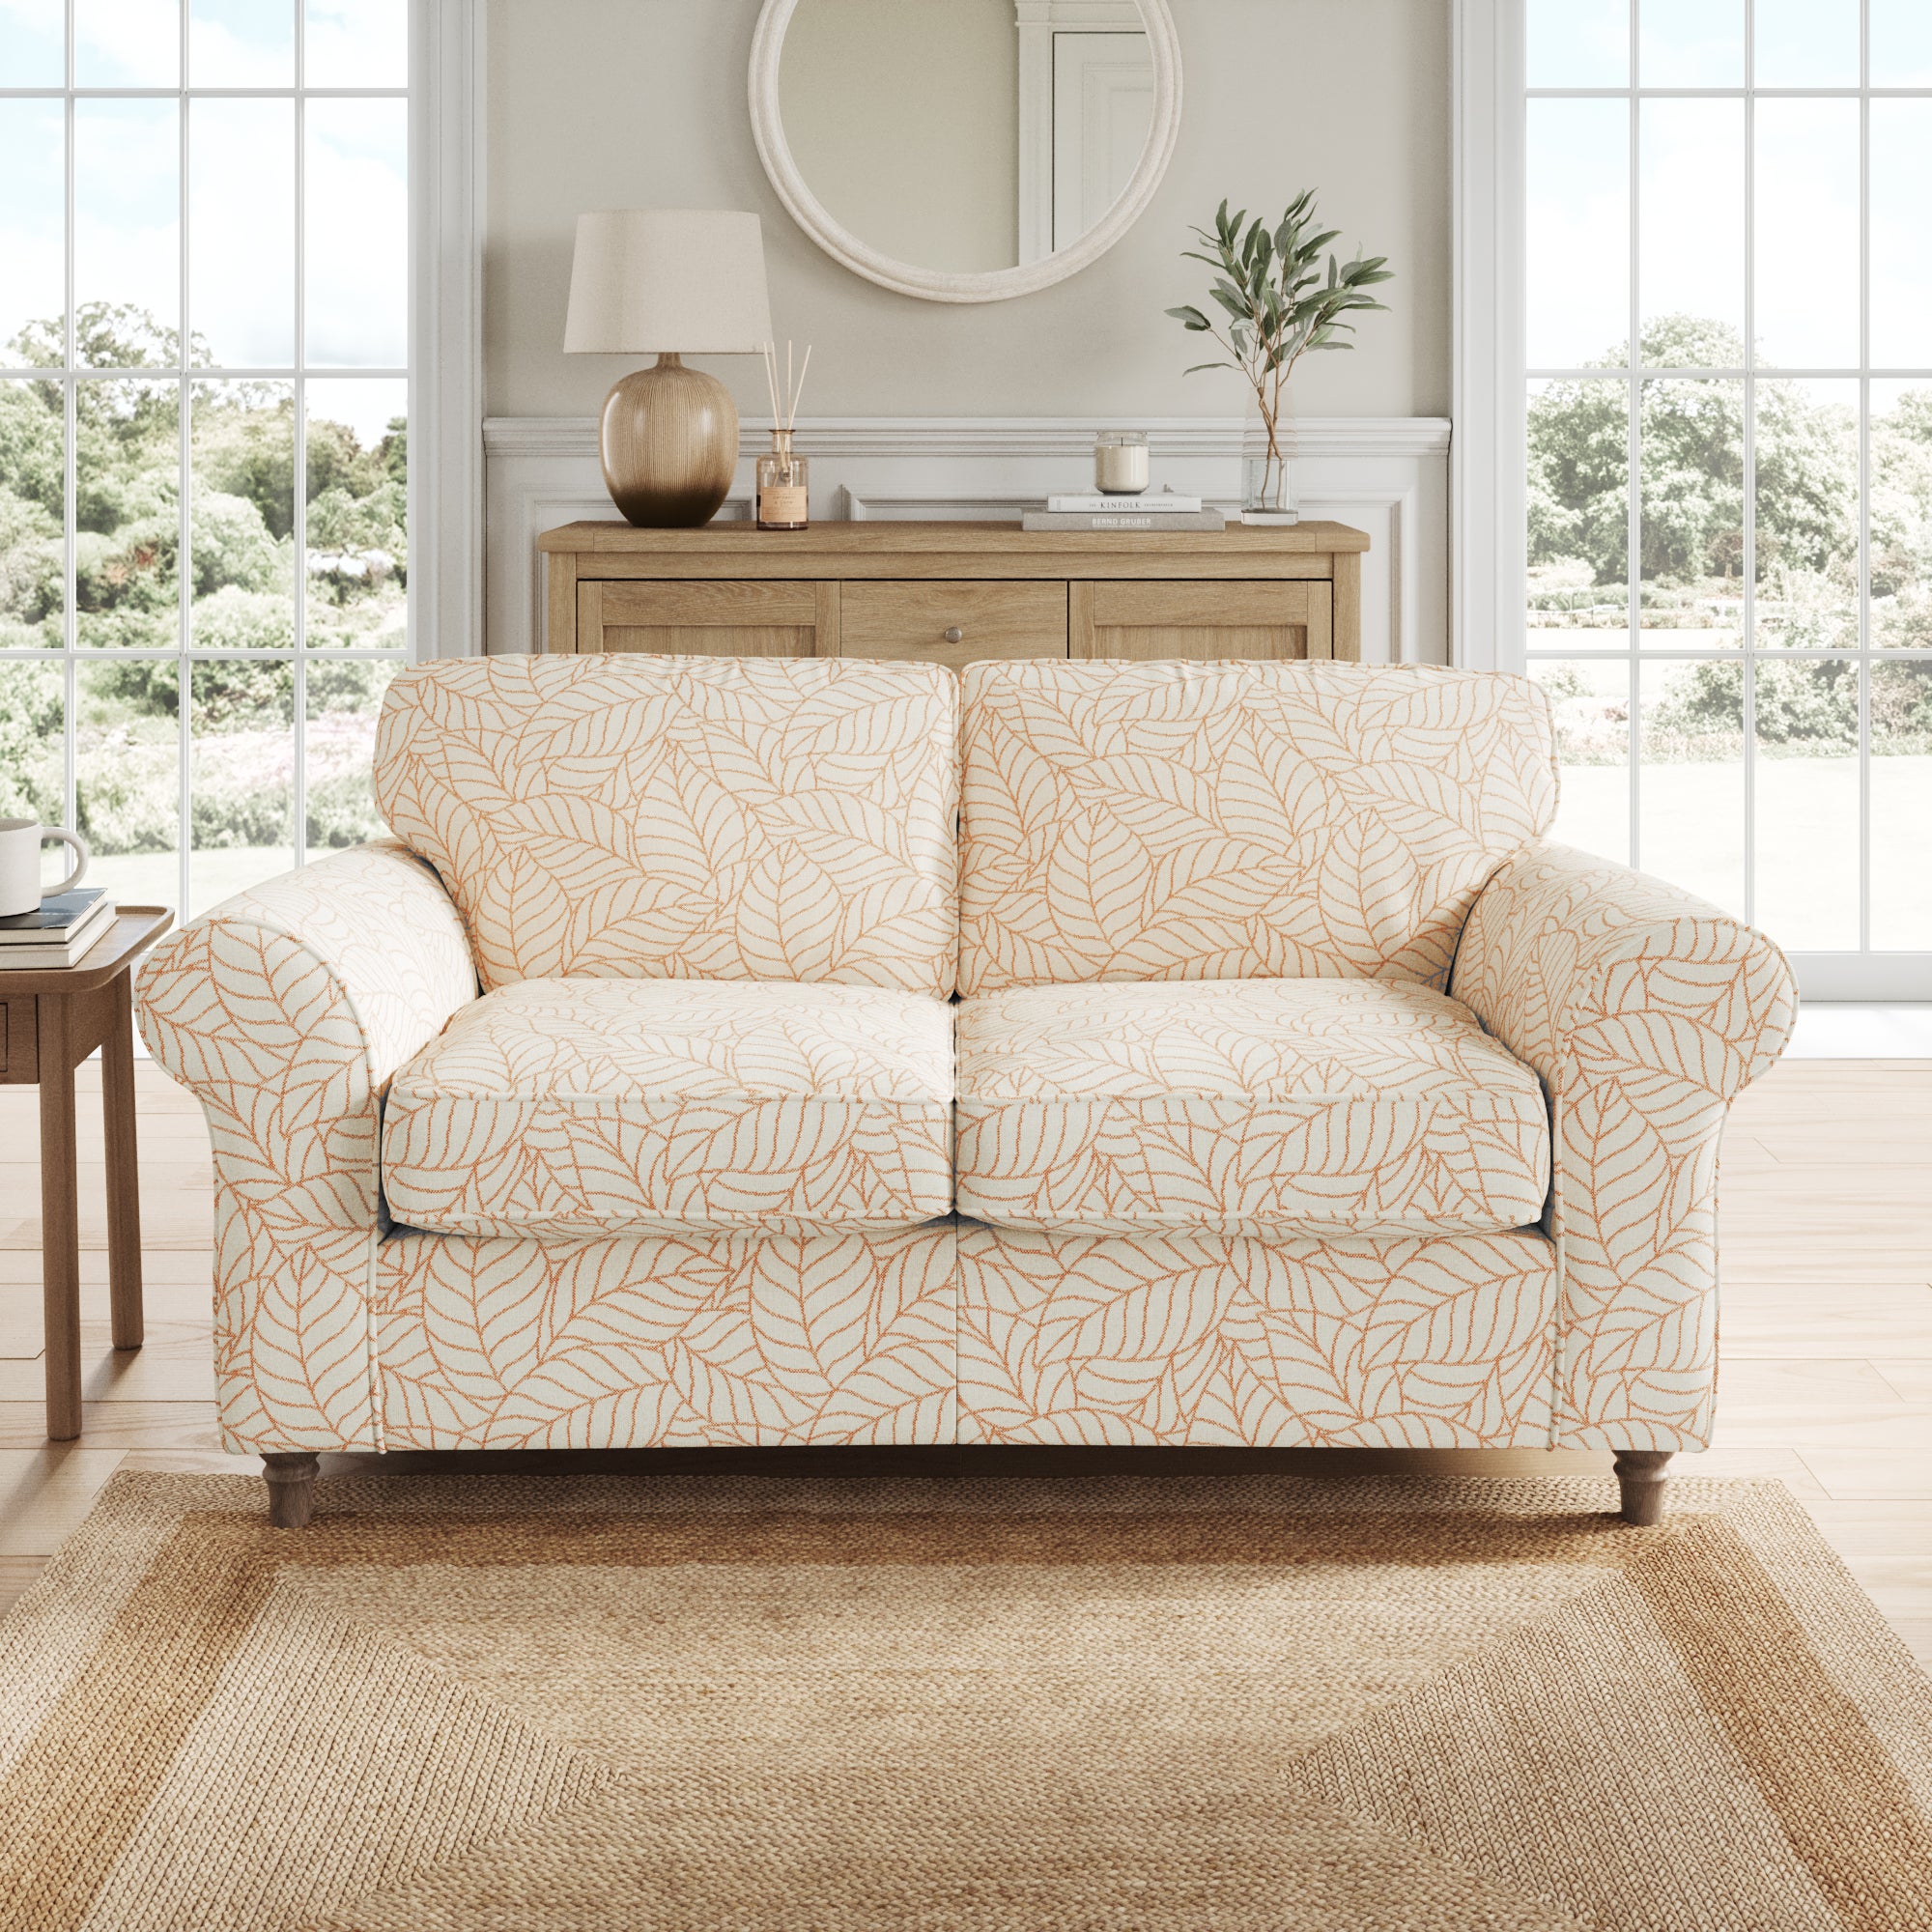 Flori 2 Seater Sofa, Leaf Print Fabric